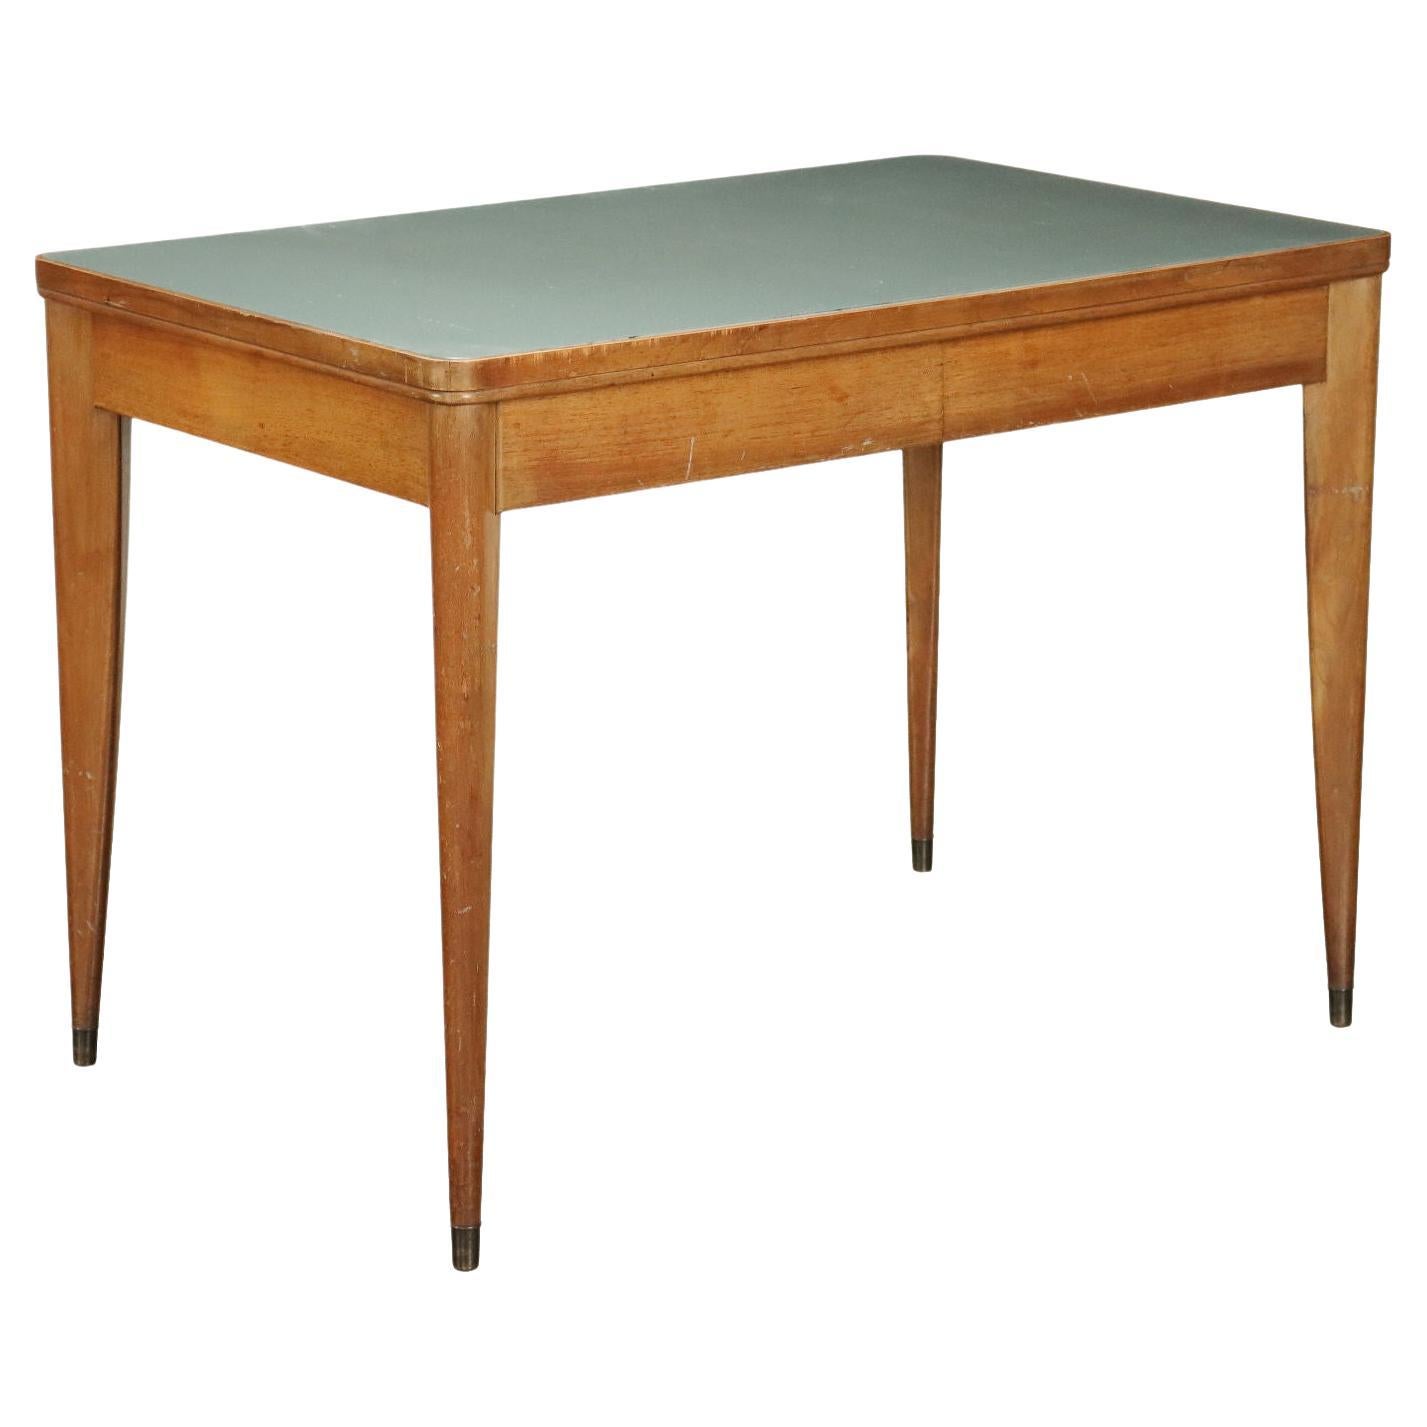 Table en laiton, bois et verre des années 50-60